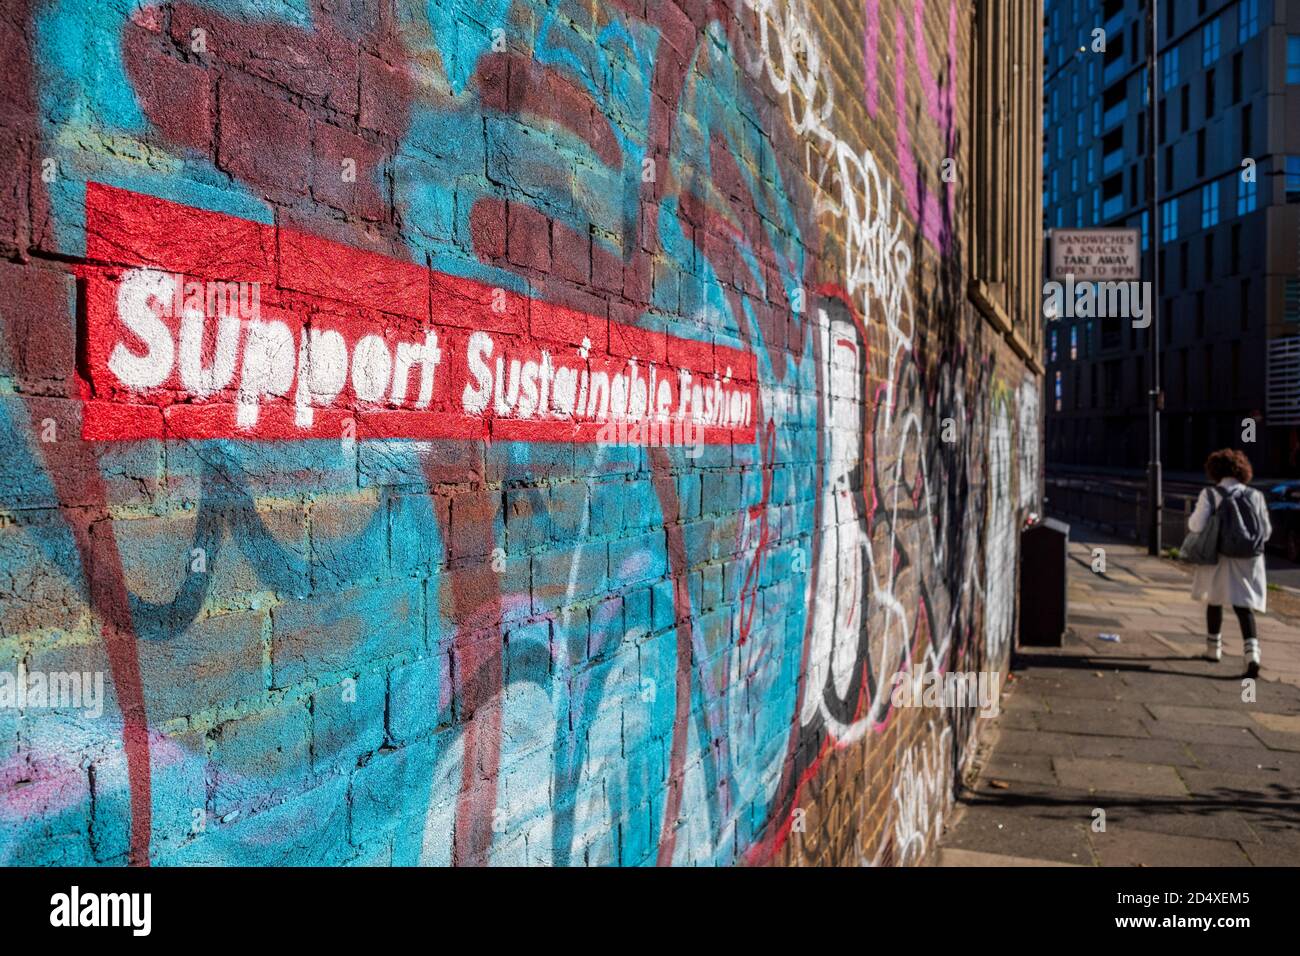 Apoya la moda sostenible - graffiti estarcido en una pared en la zona de moda shoreditch de Londres, cerca de Brick Lane. Foto de stock